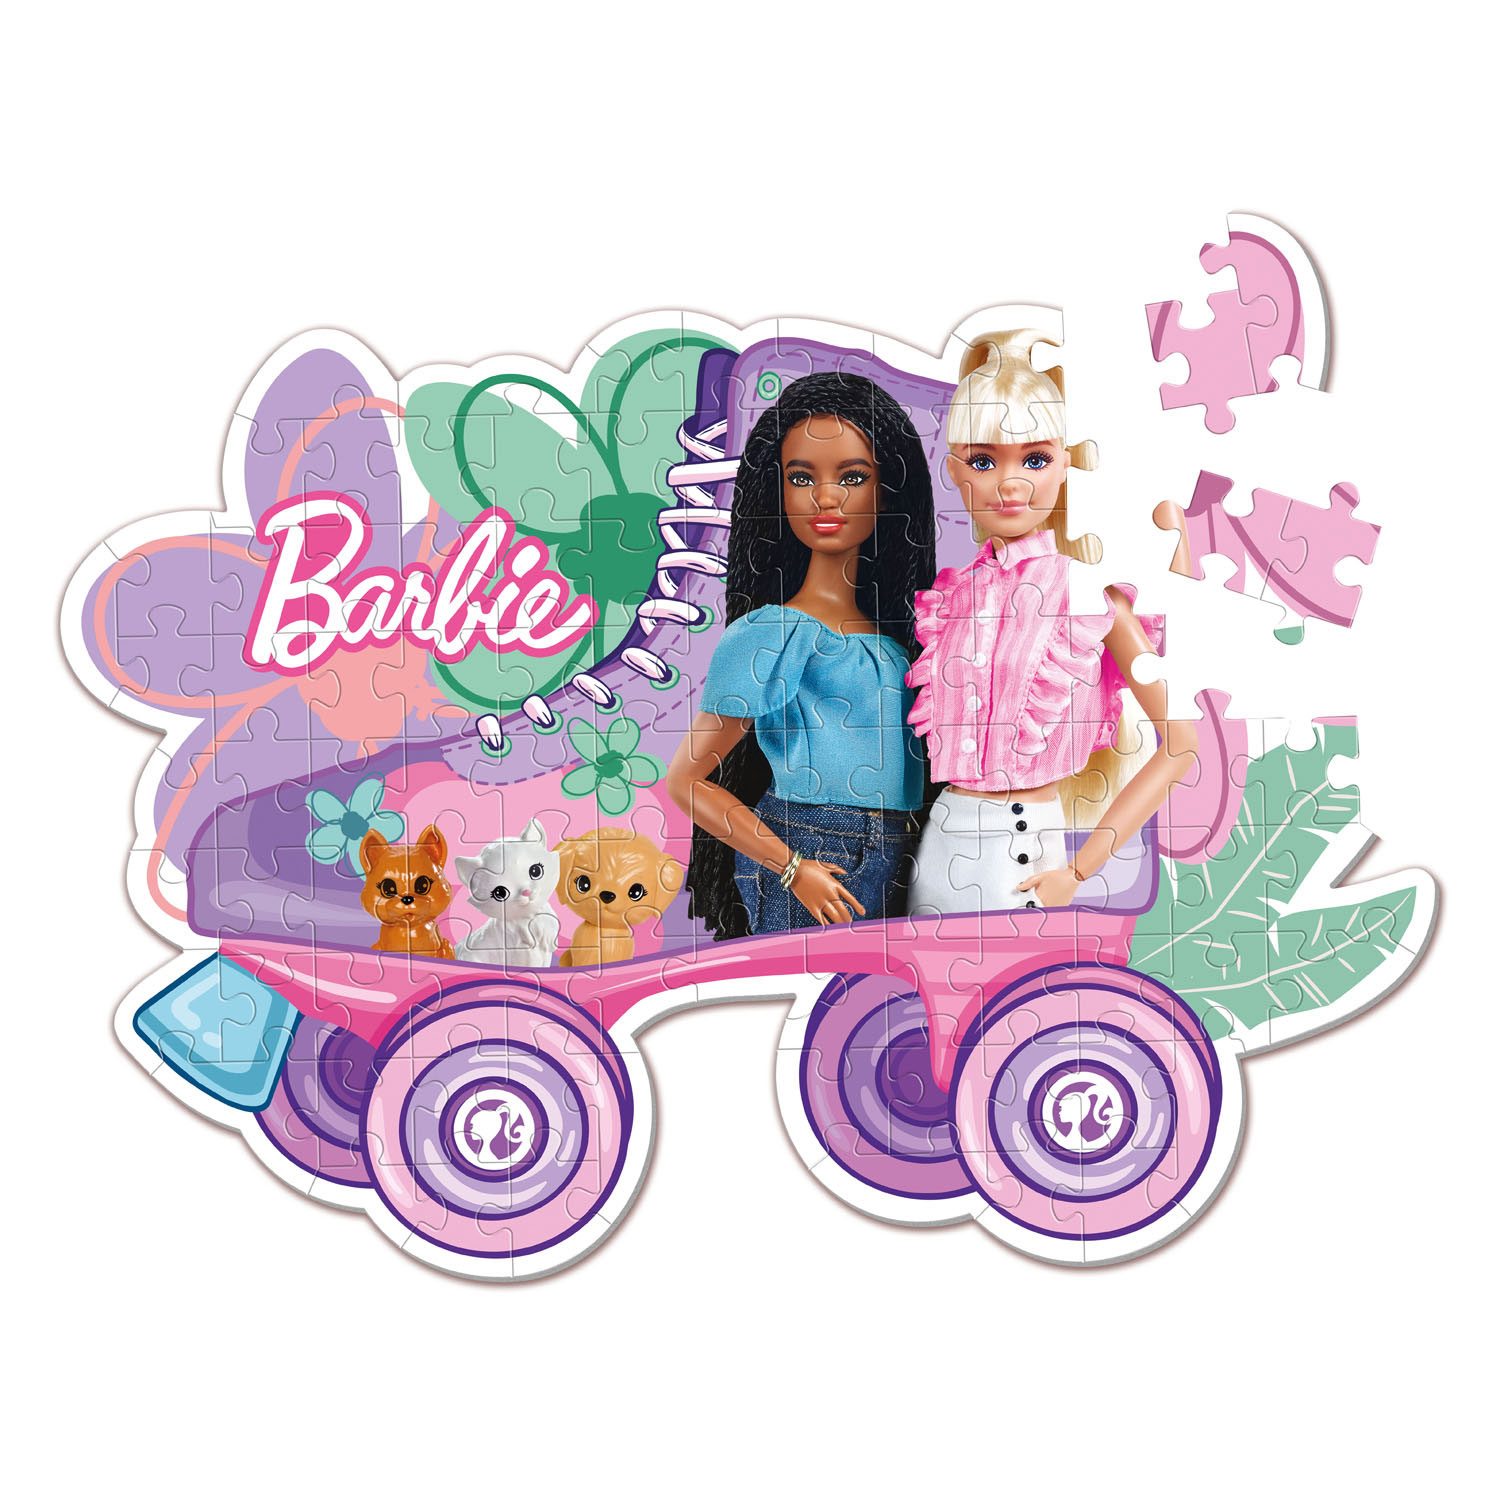 Clementoni Puzzle Super Color - Barbie Roller Skate, 104 pièces.